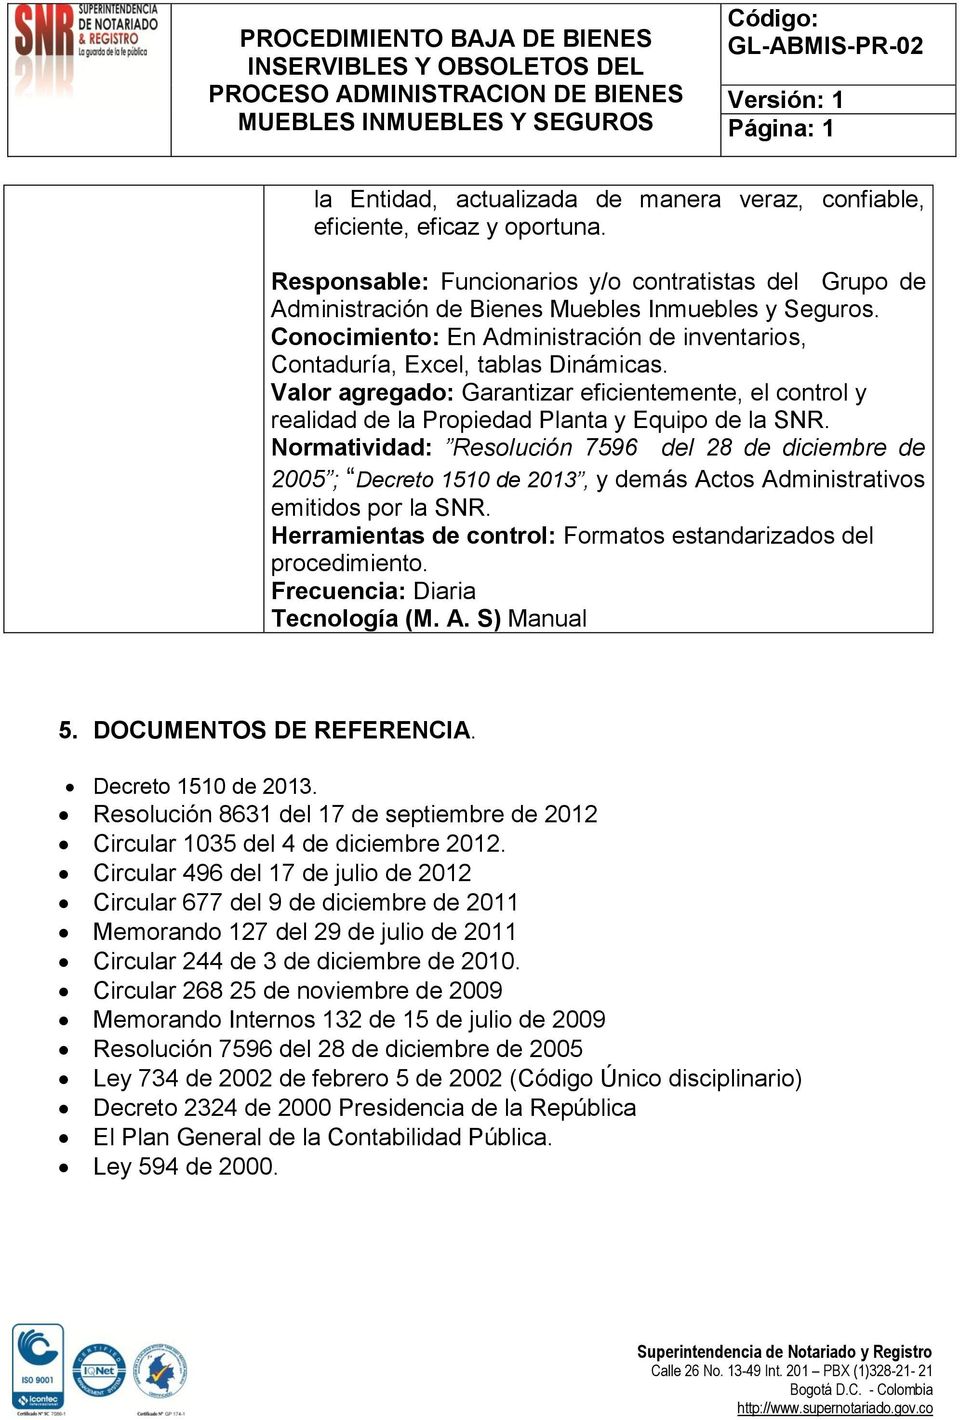 Normatividad: Resolución 7596 del 28 de diciembre de 2005 ; Decreto 1510 de 2013, y demás Actos Administrativos emitidos por la SNR. Herramientas de control: Formatos estandarizados del procedimiento.